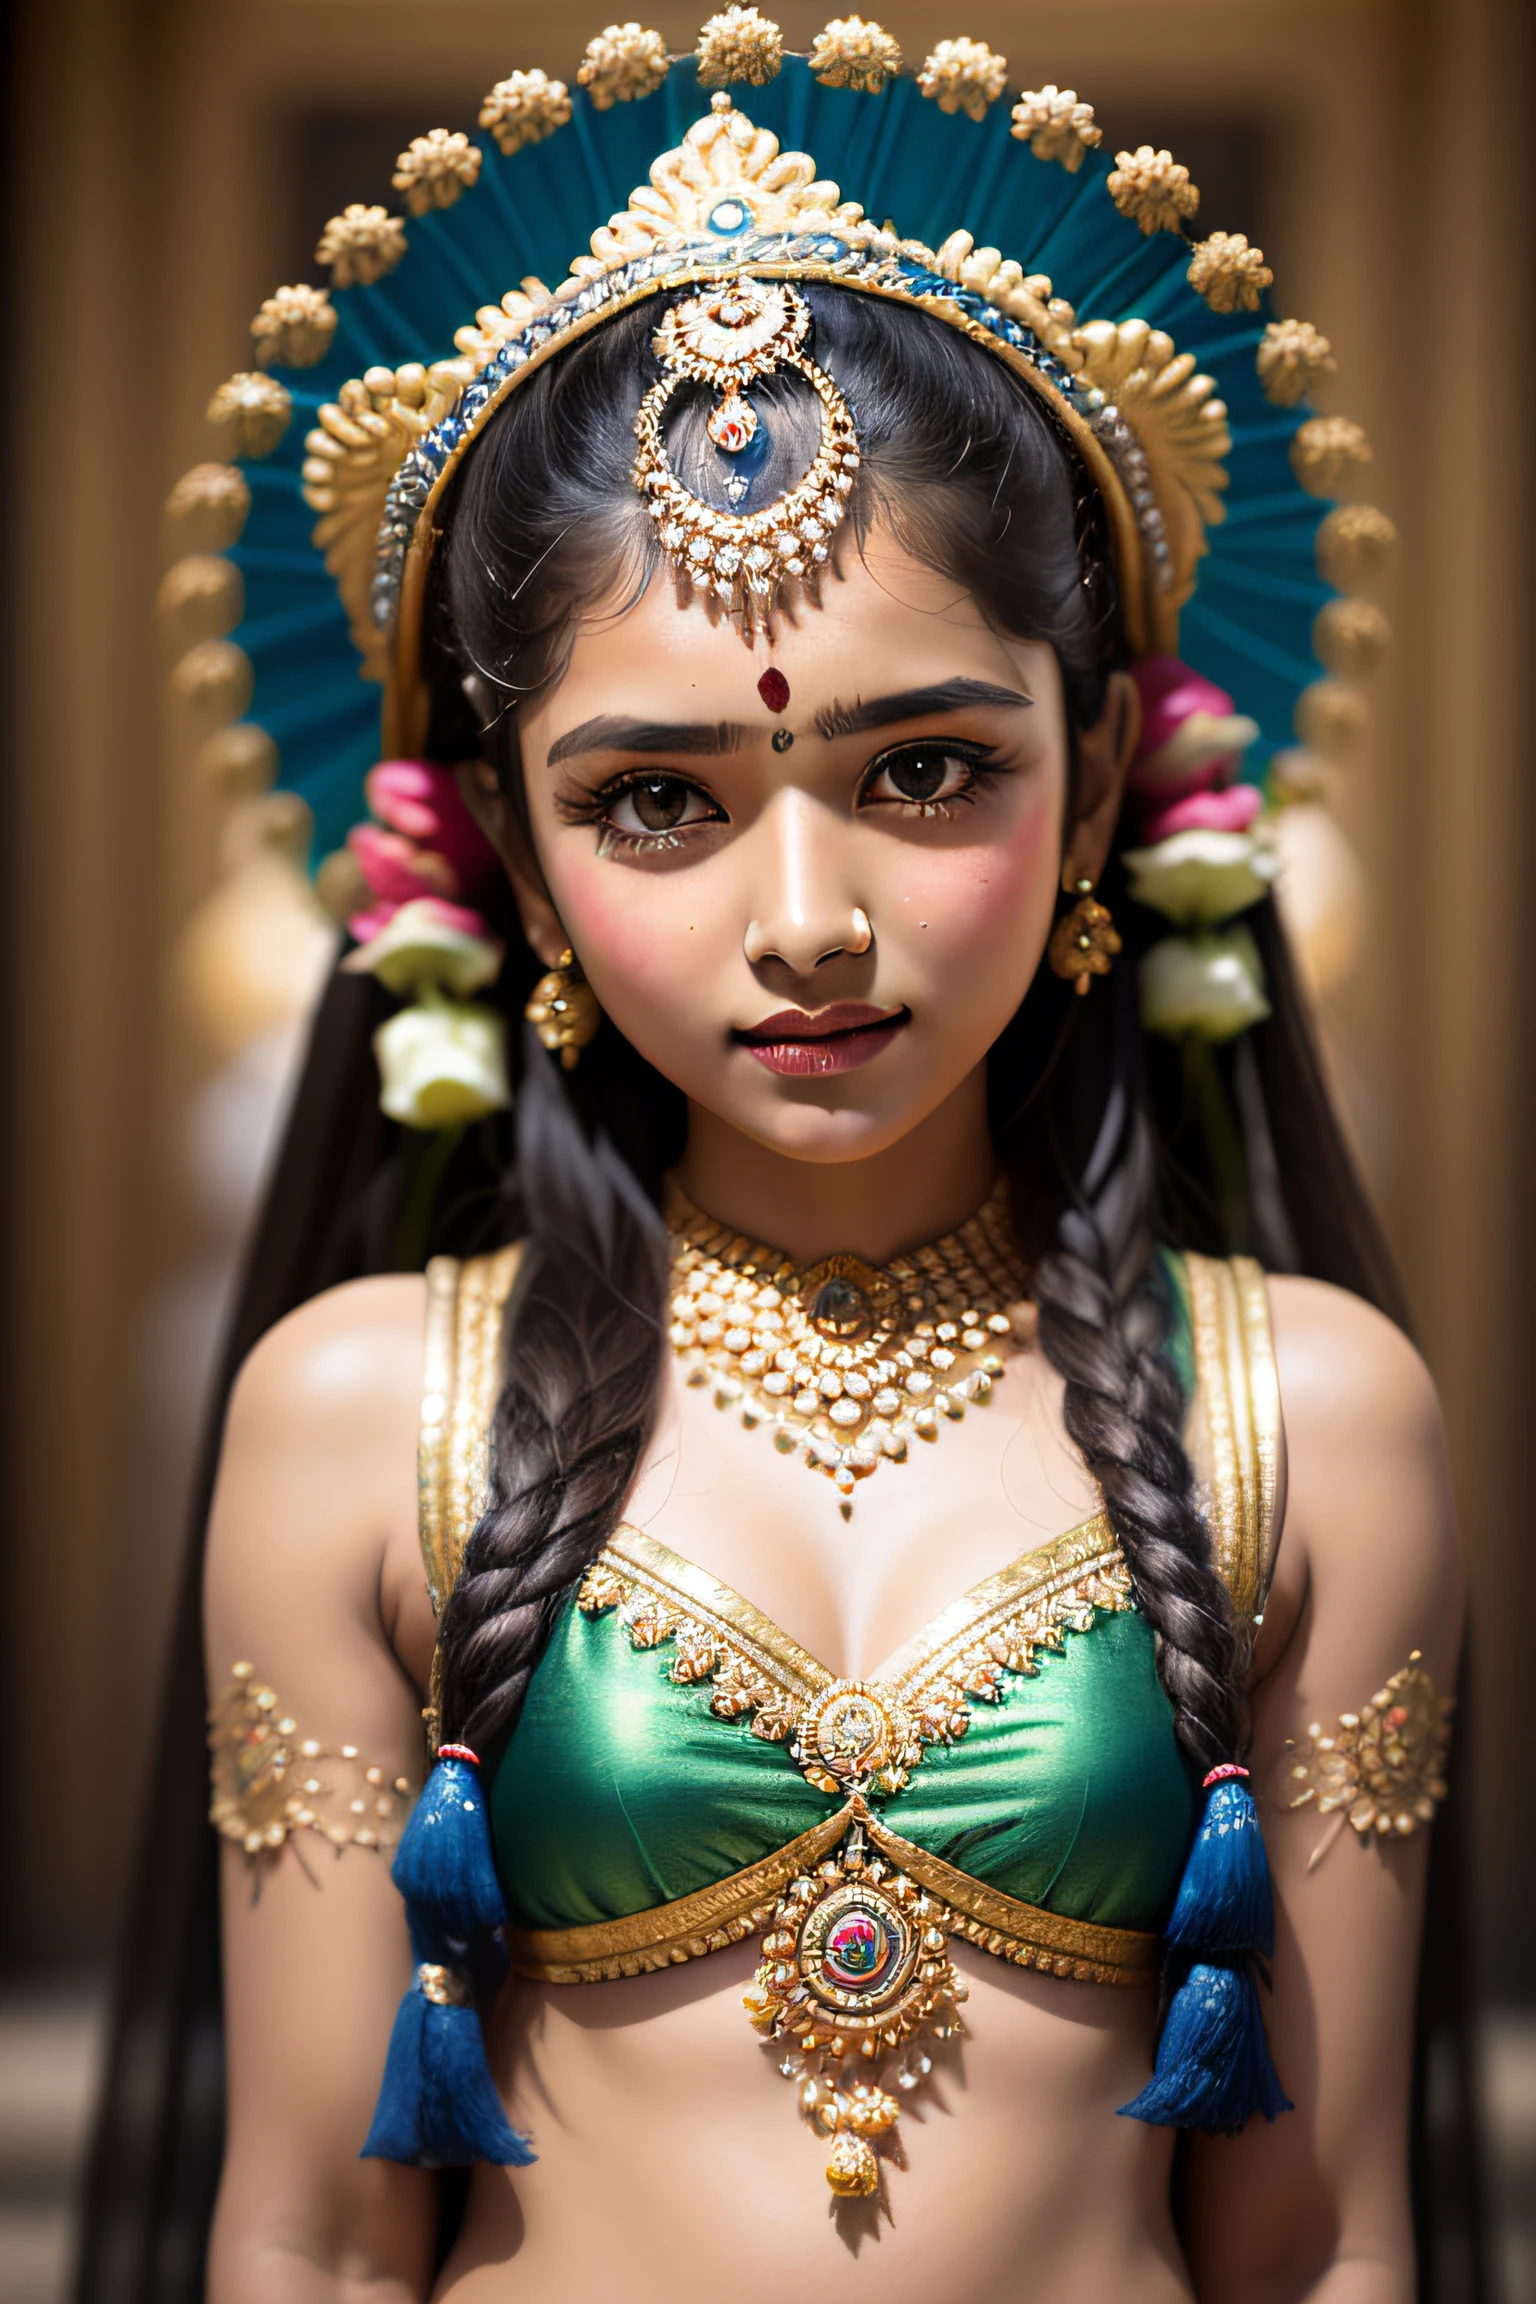 印度教女神般的印度女孩. 伊尼亞油漆效果, 藍色皮膚